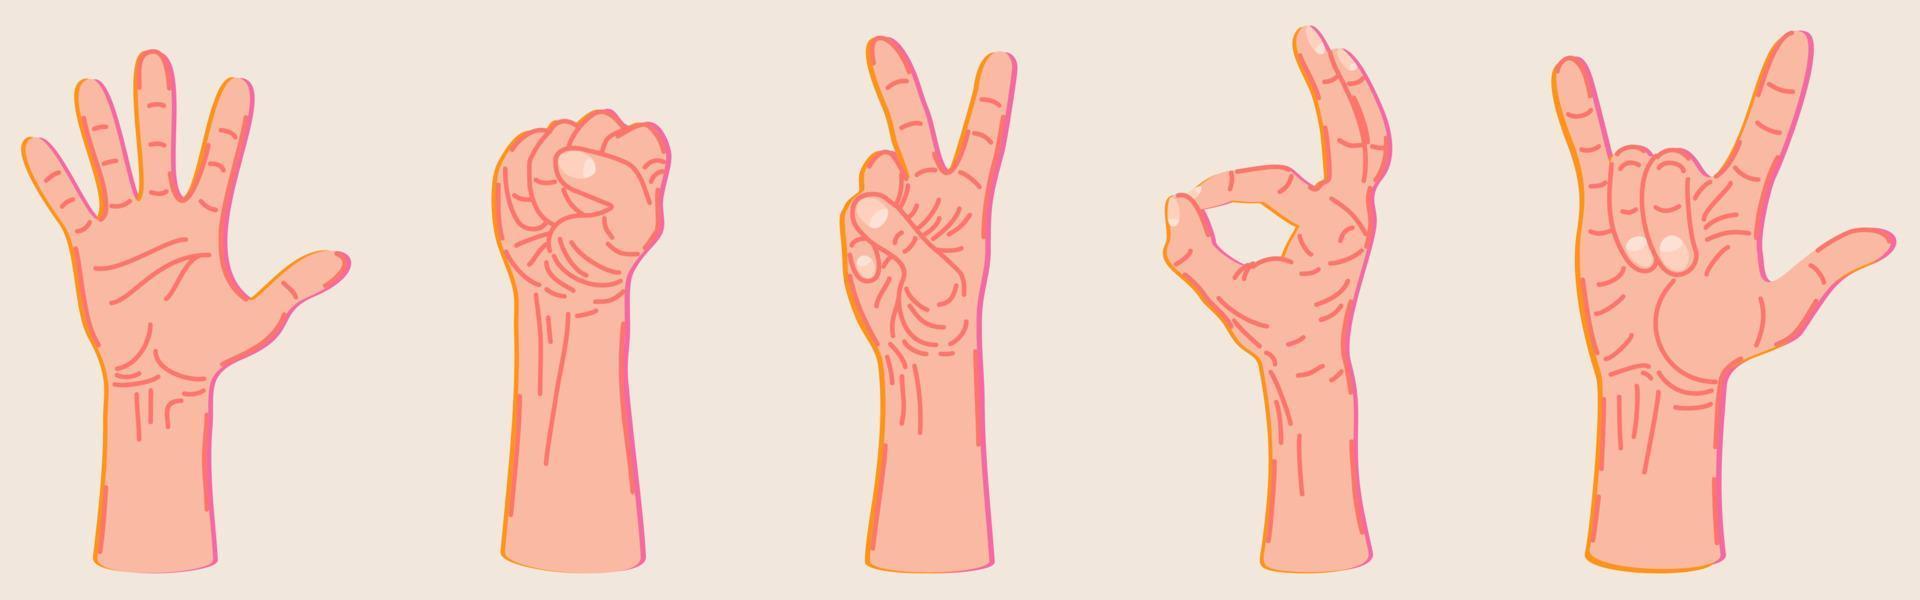 insieme vettoriale di diversi gesti delle mani.